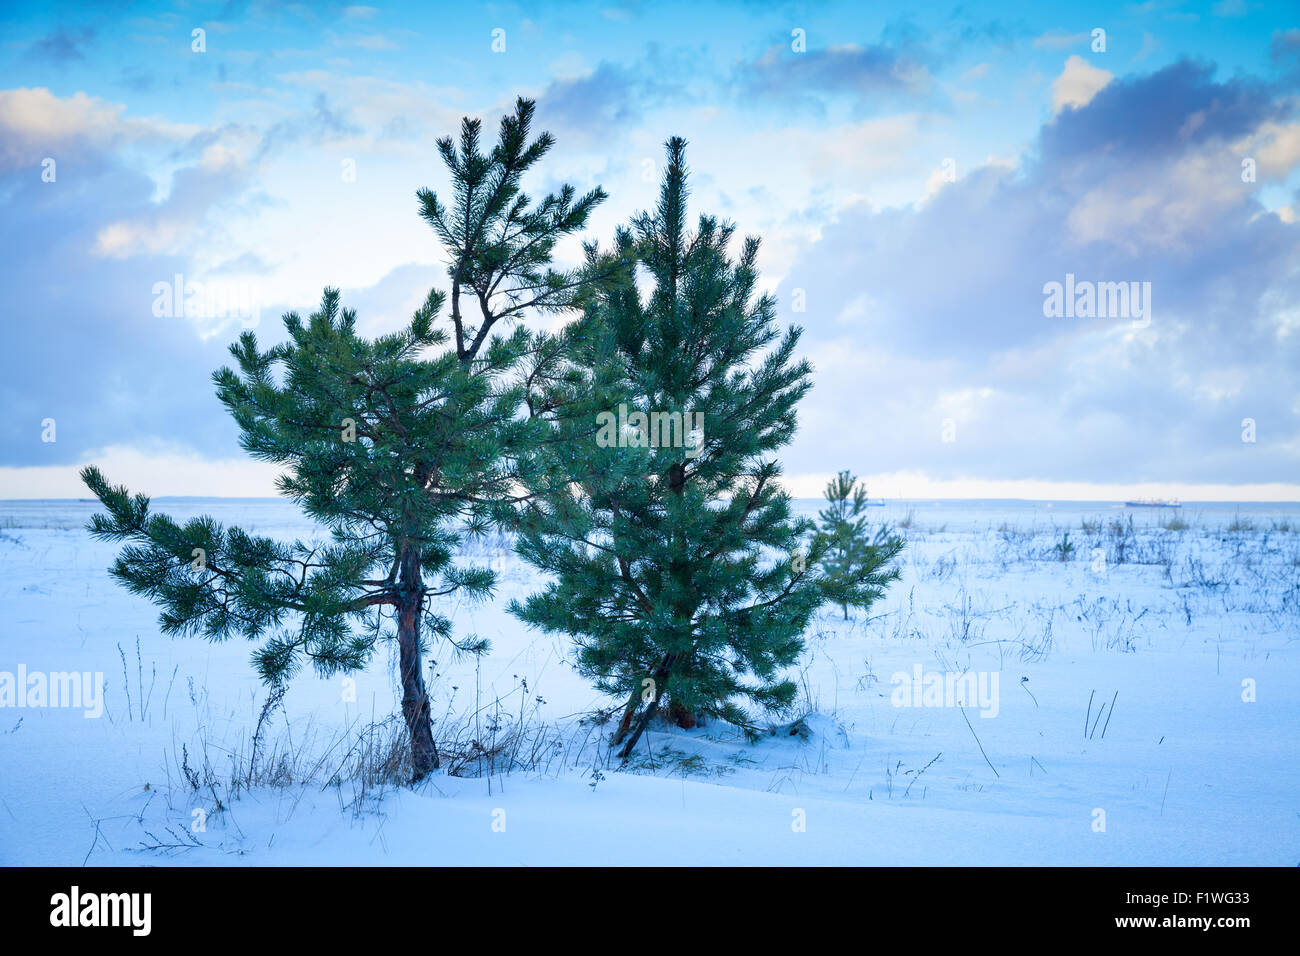 Les petits pins sur la côte de la mer Baltique sous ciel nuageux. Golfe de Finlande, la Russie, la saison d'hiver Banque D'Images